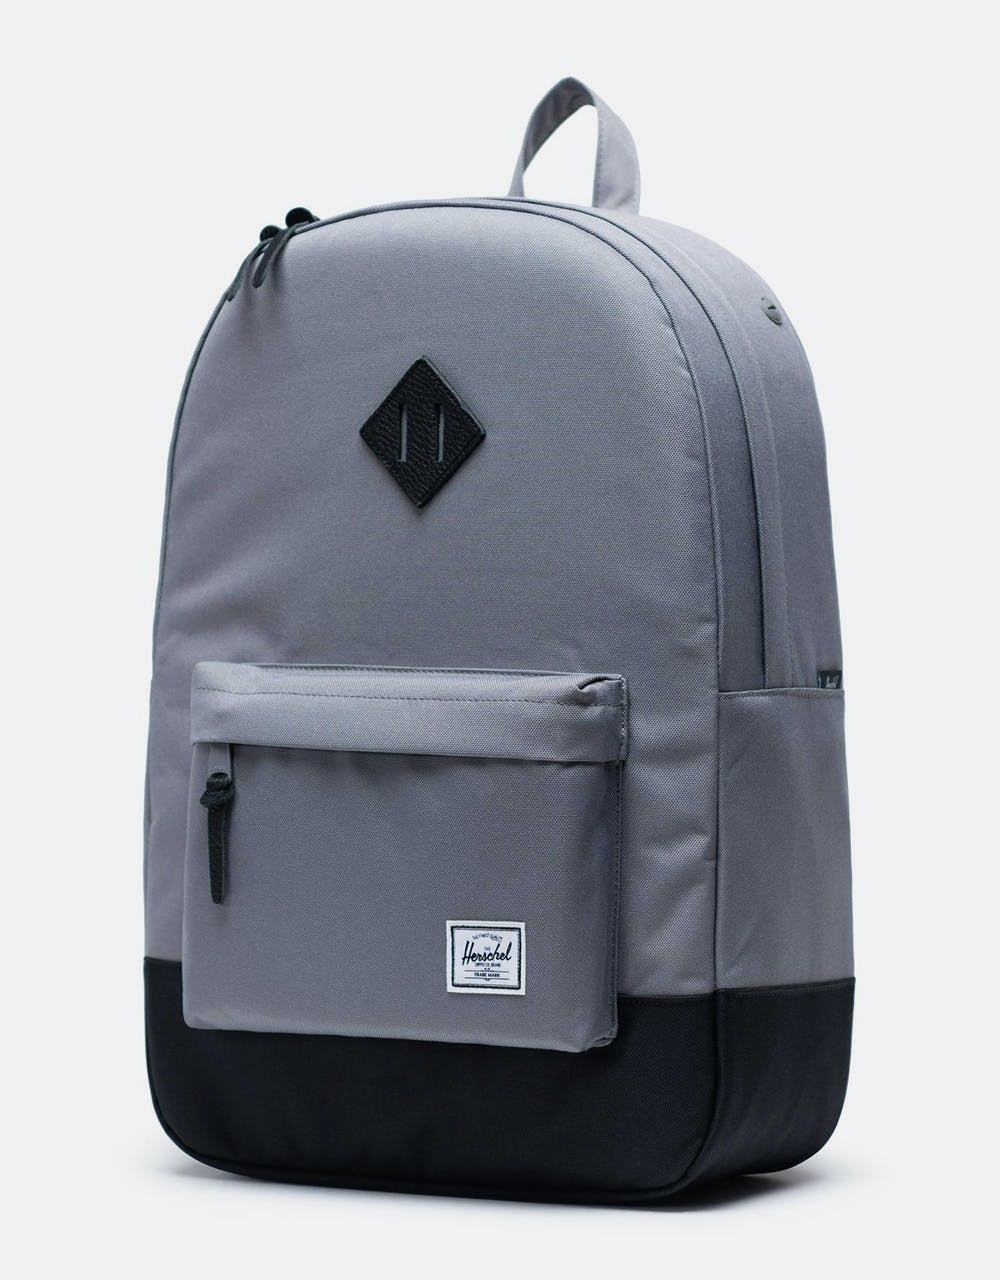 Herschel Supply Co. Heritage Backpack - Grey/Black